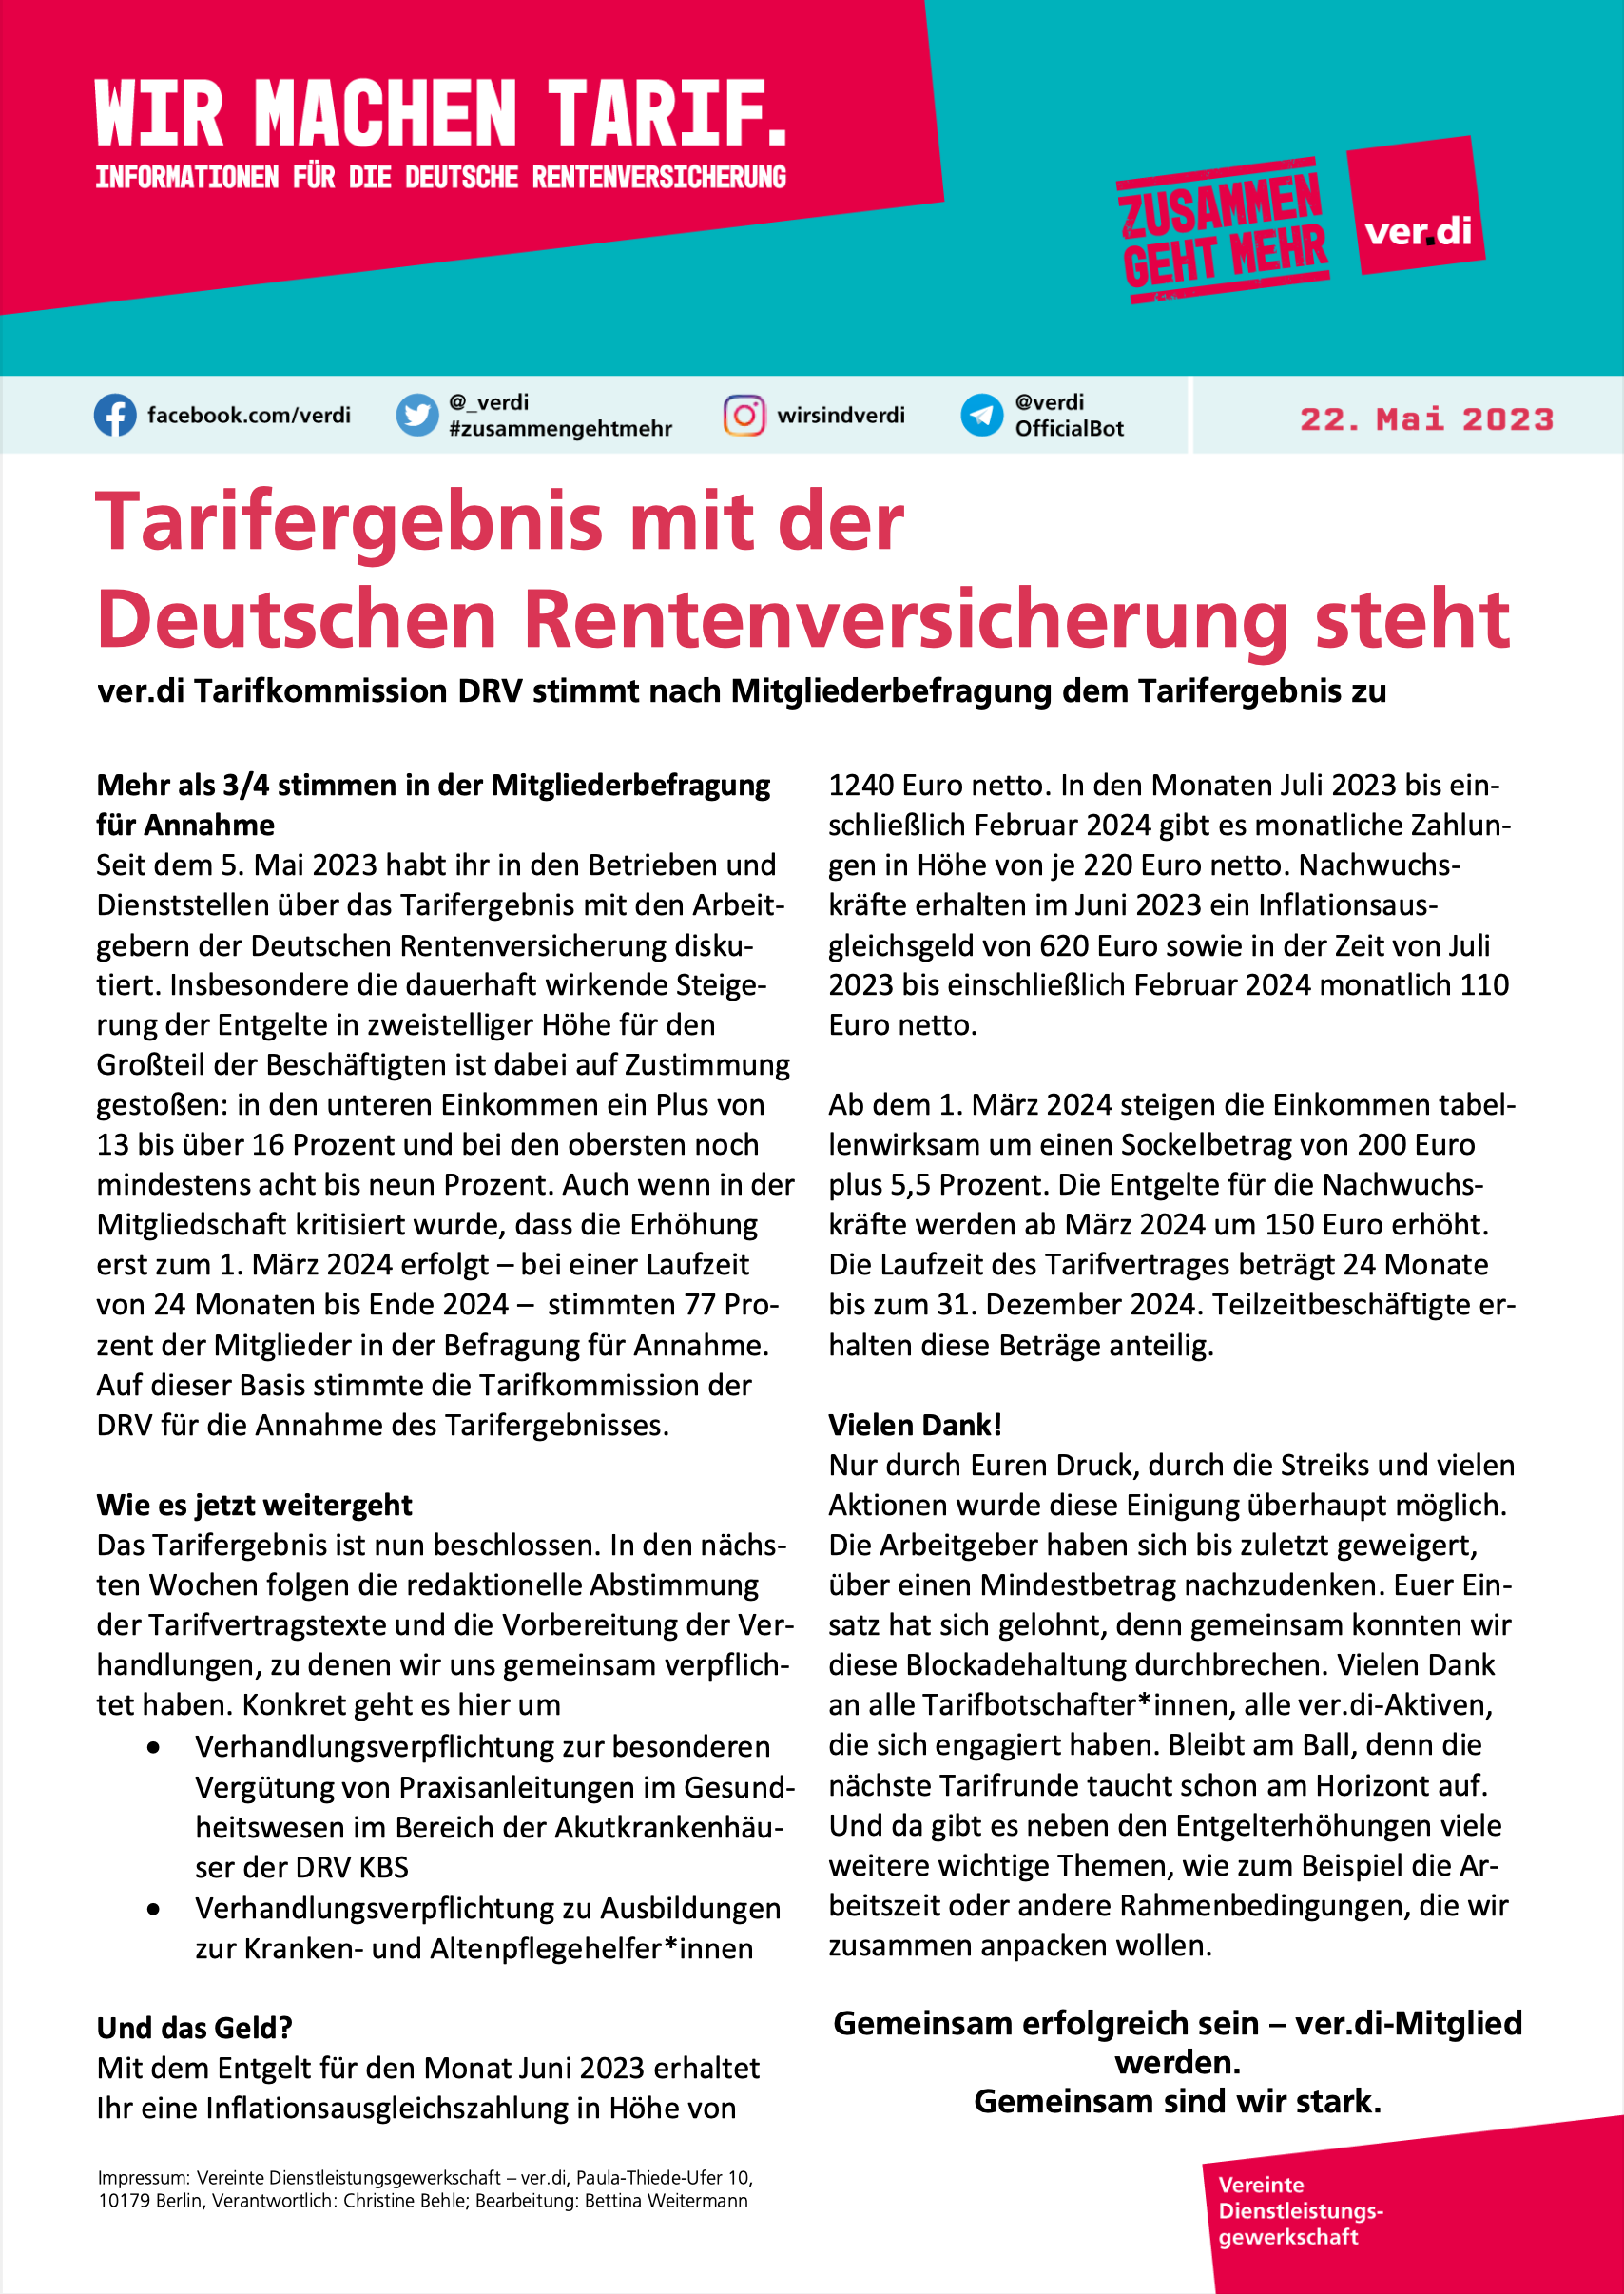 ver.di-Tarifinfo (22.05.2023): Tarifergebnis mit der Deutschen Rentenversicherung steht